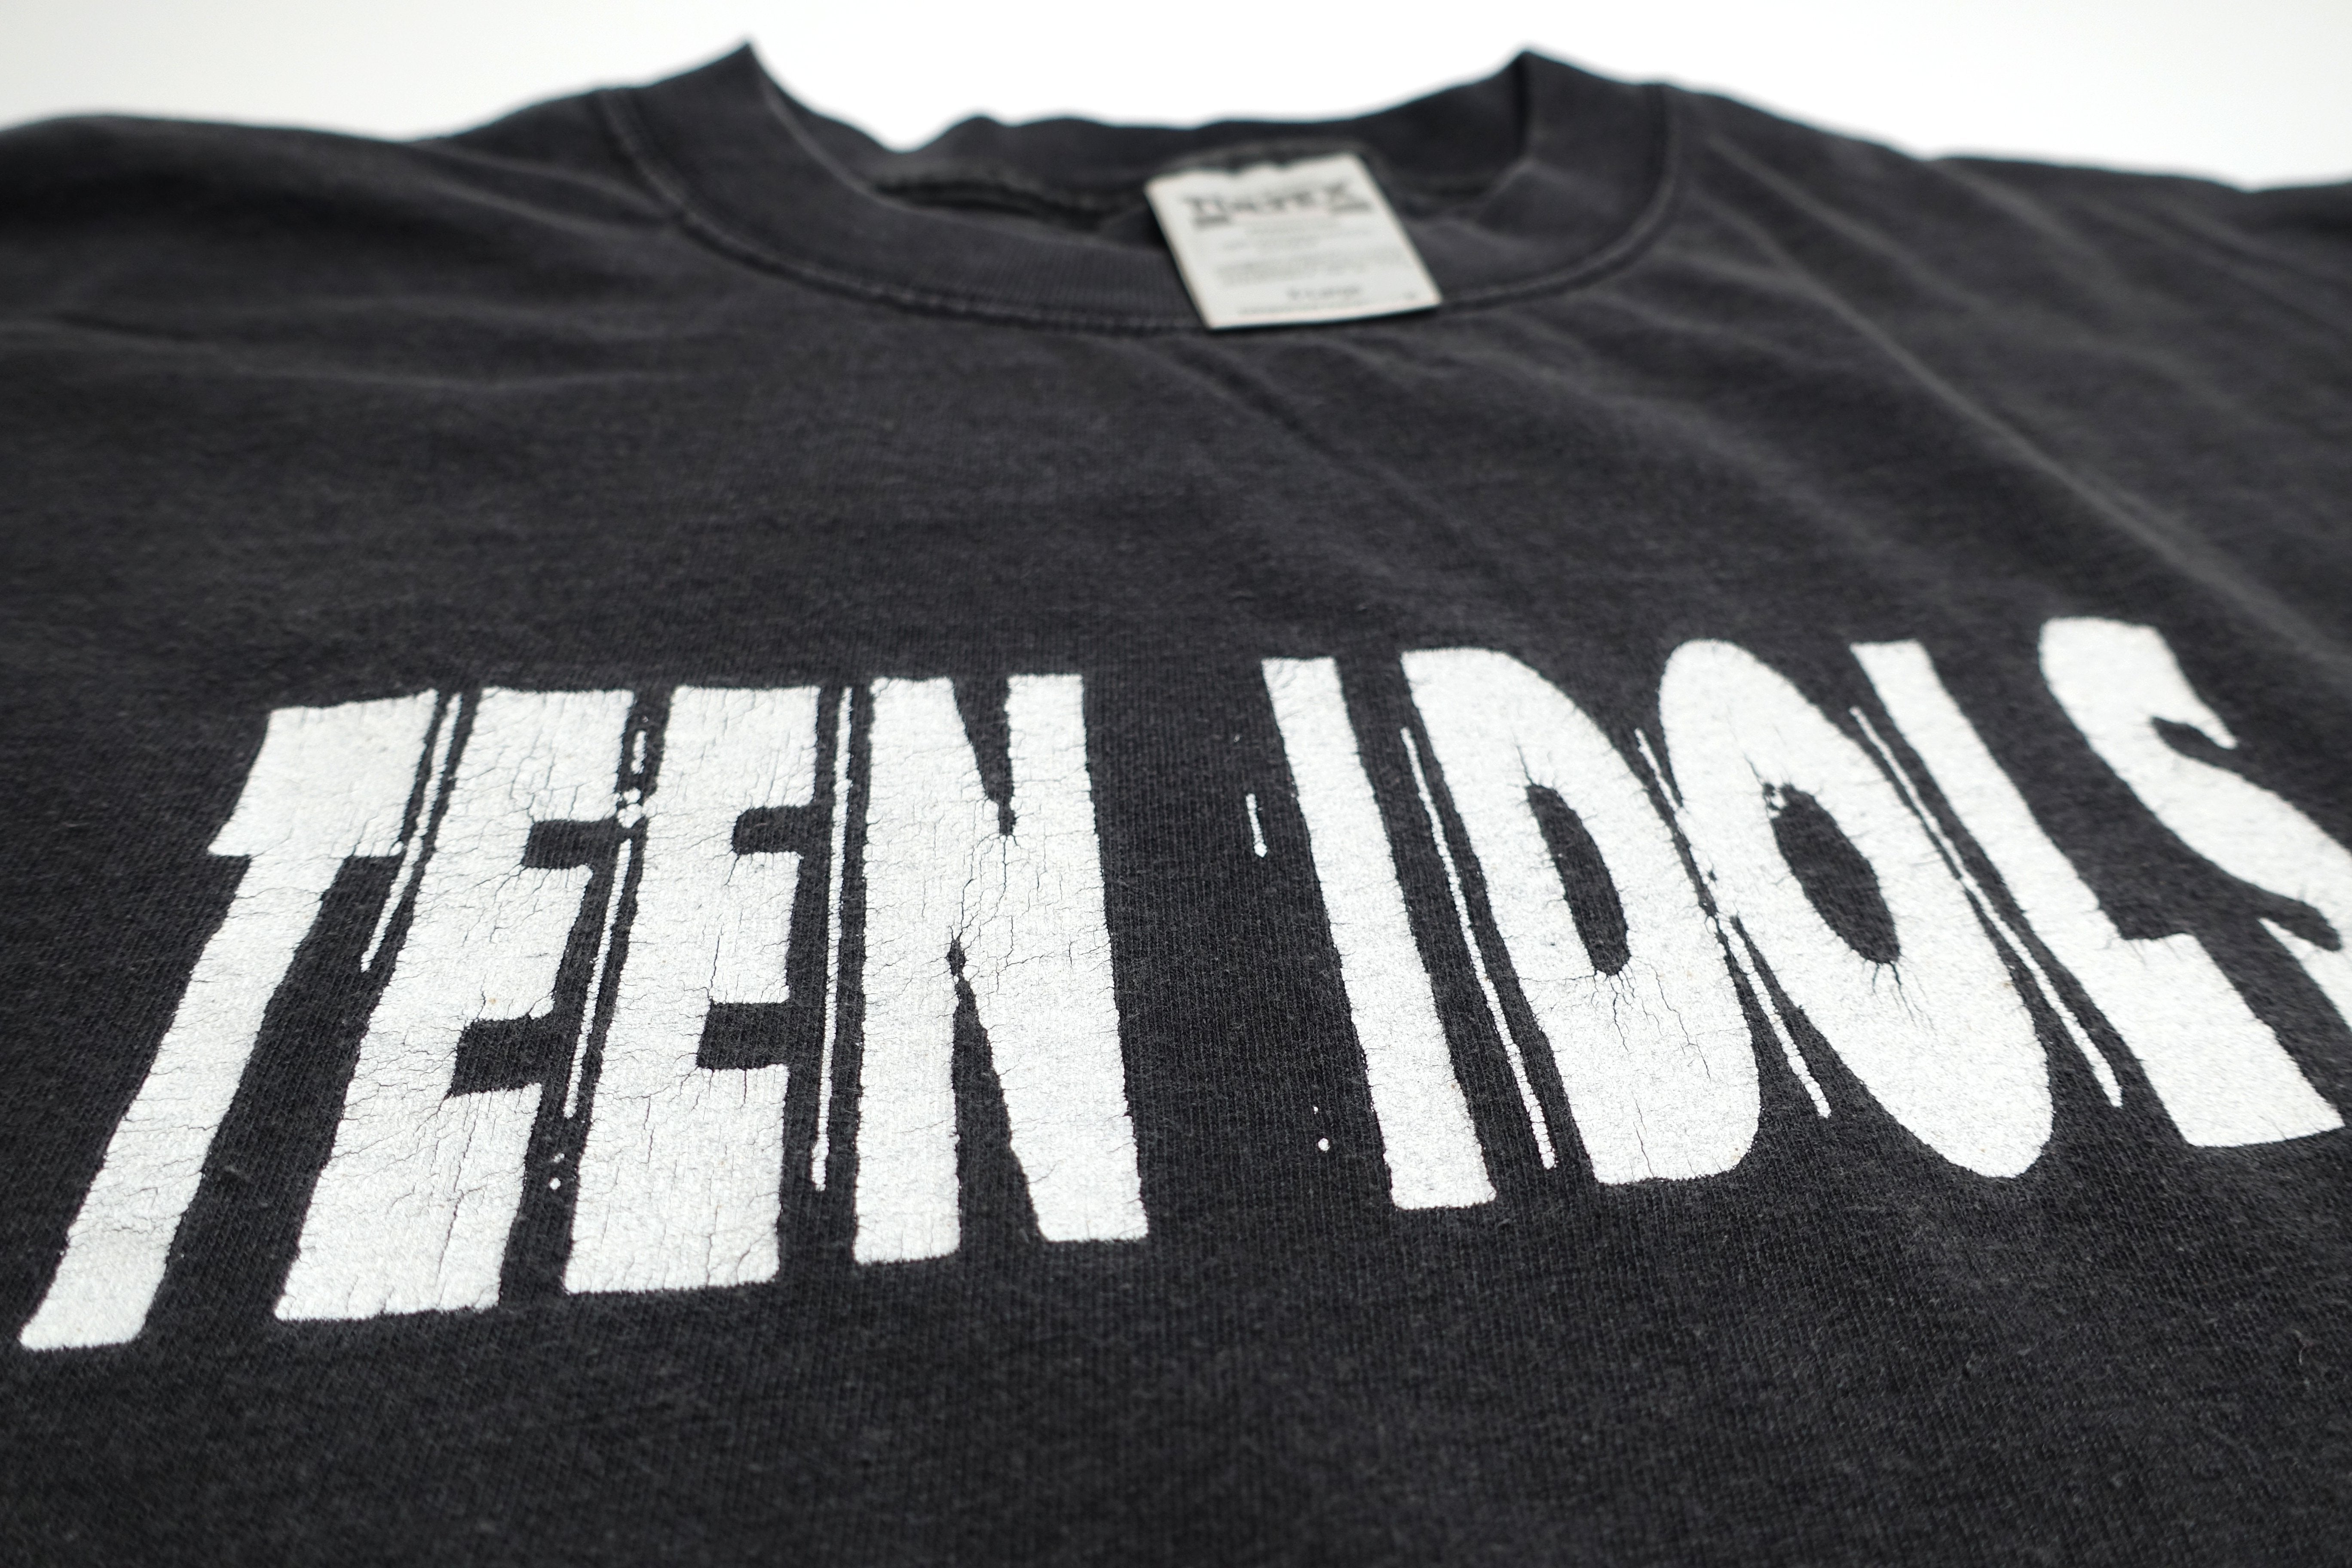 Teen Idols ‎– Pucker Up! 1999 Tour Shirt Size XL